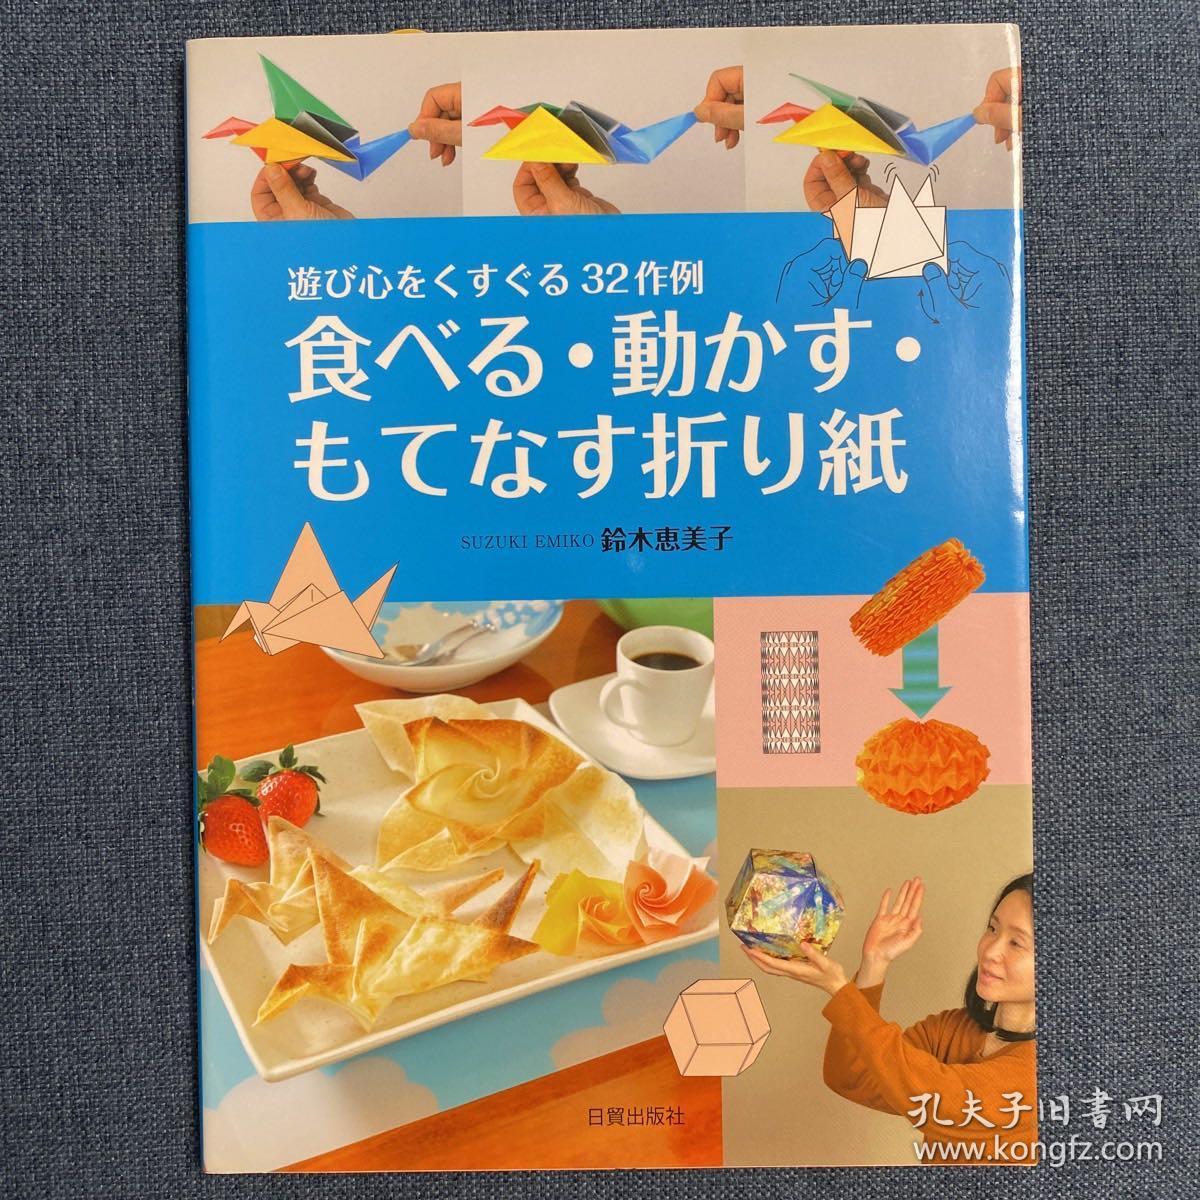 日本折纸书食べる・動かす・もてなす折り紙_孔夫子旧书网